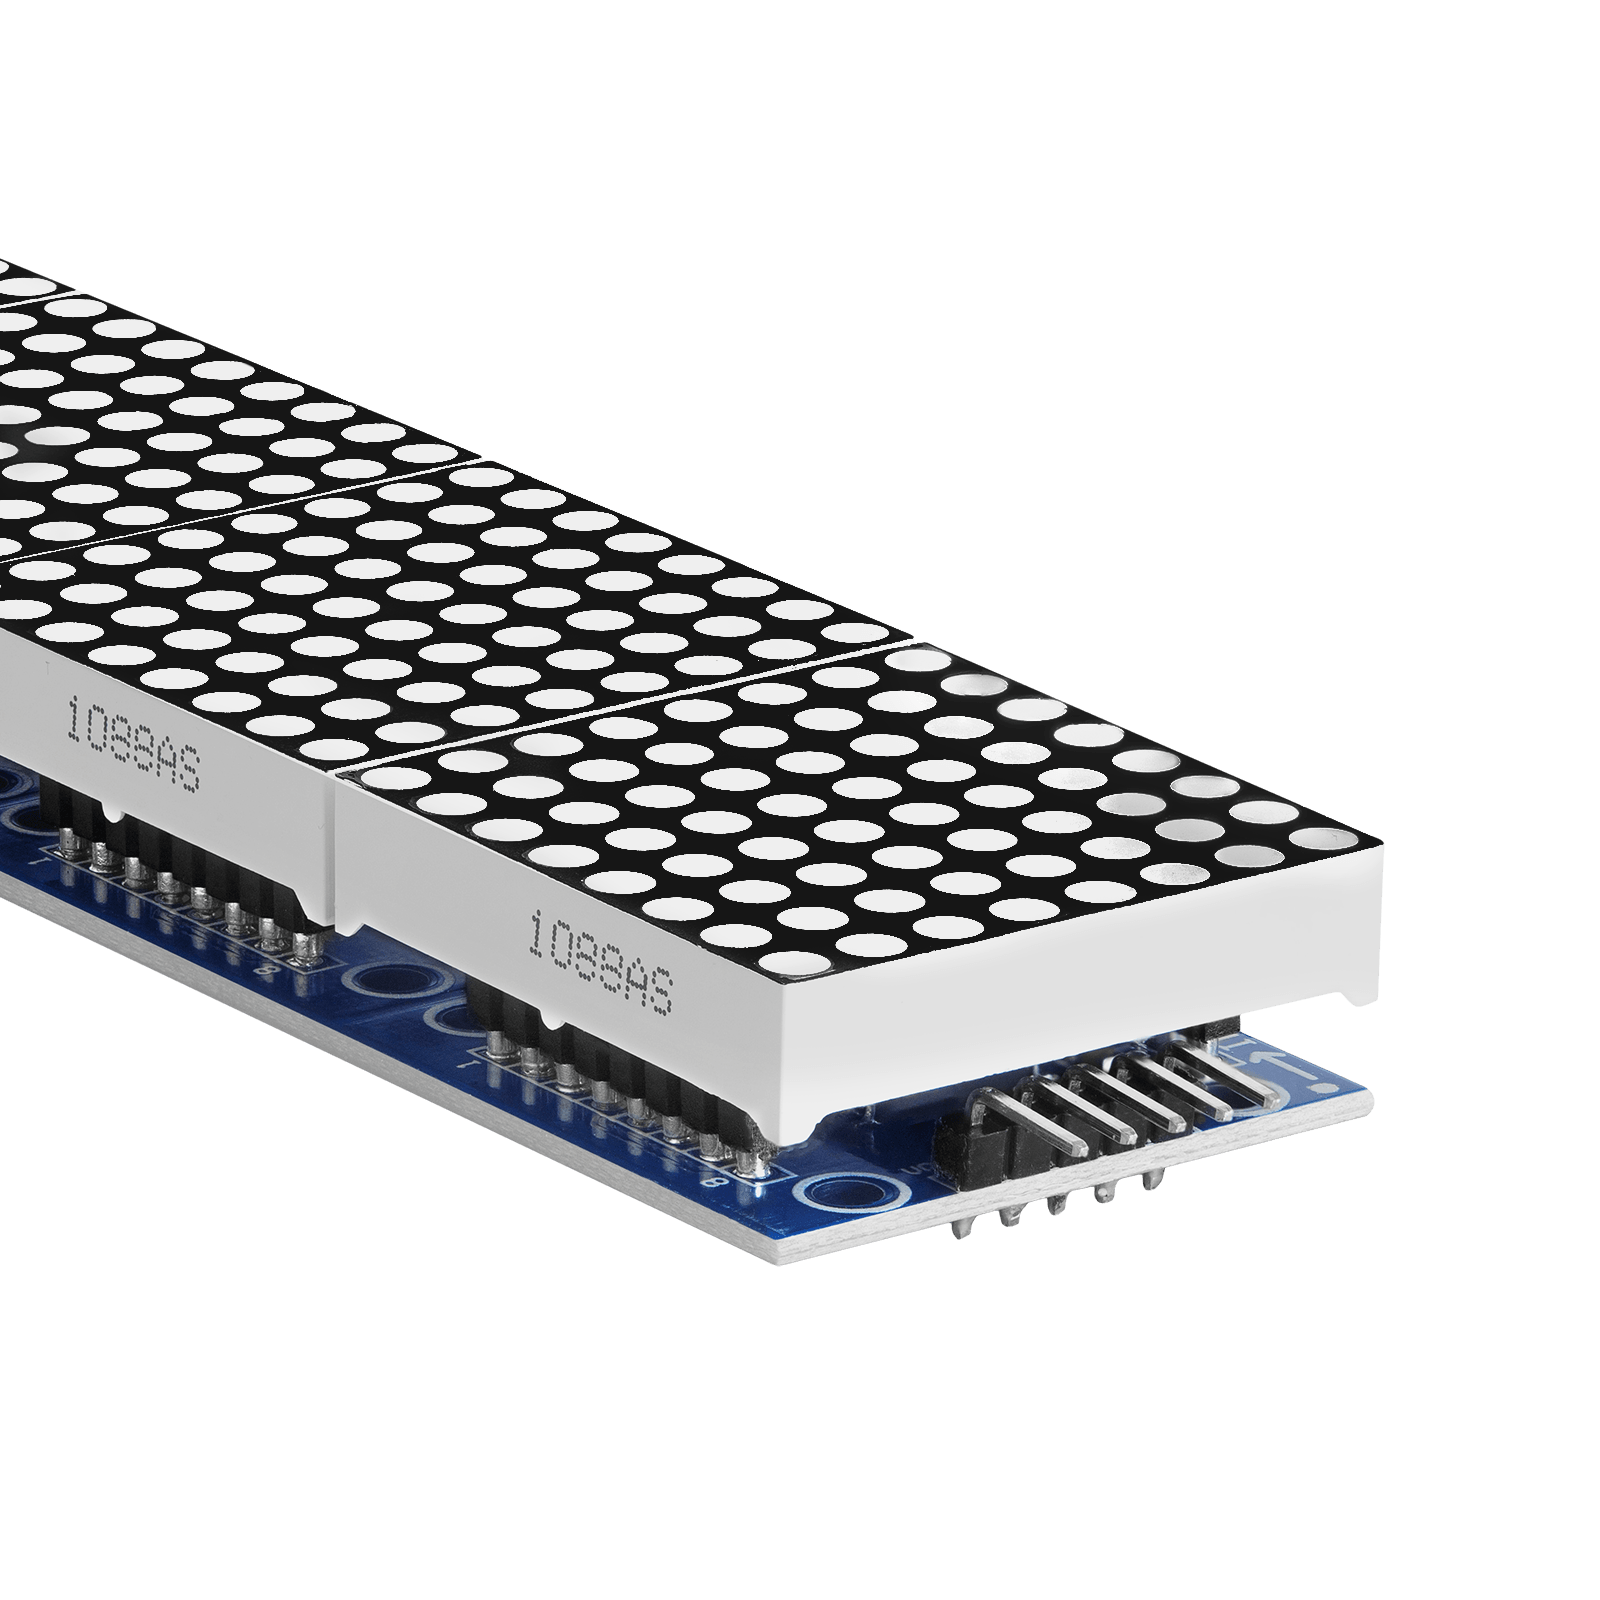 MAX7219 8x32 4 in 1 Dot Matrix LED Anzeigemodul kompatibel mit Arduino und Raspberry Pi - AZ-Delivery